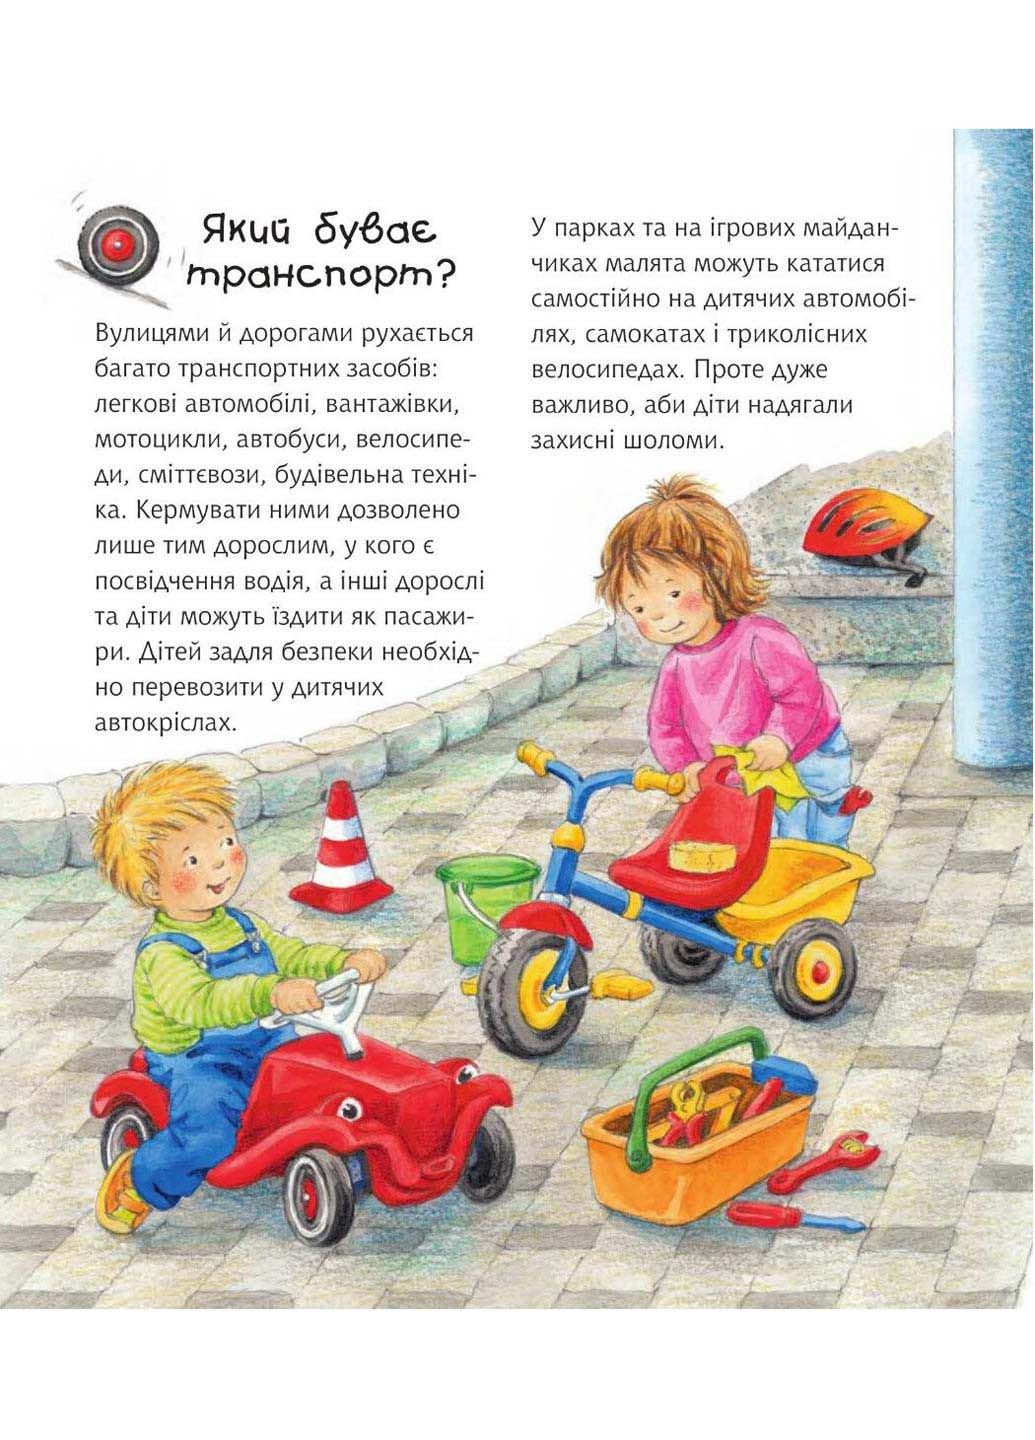 Книга Легковые и грузовые автомобили Андреа Эрне 2023г 16 с Навчальна книга - Богдан (293058079)